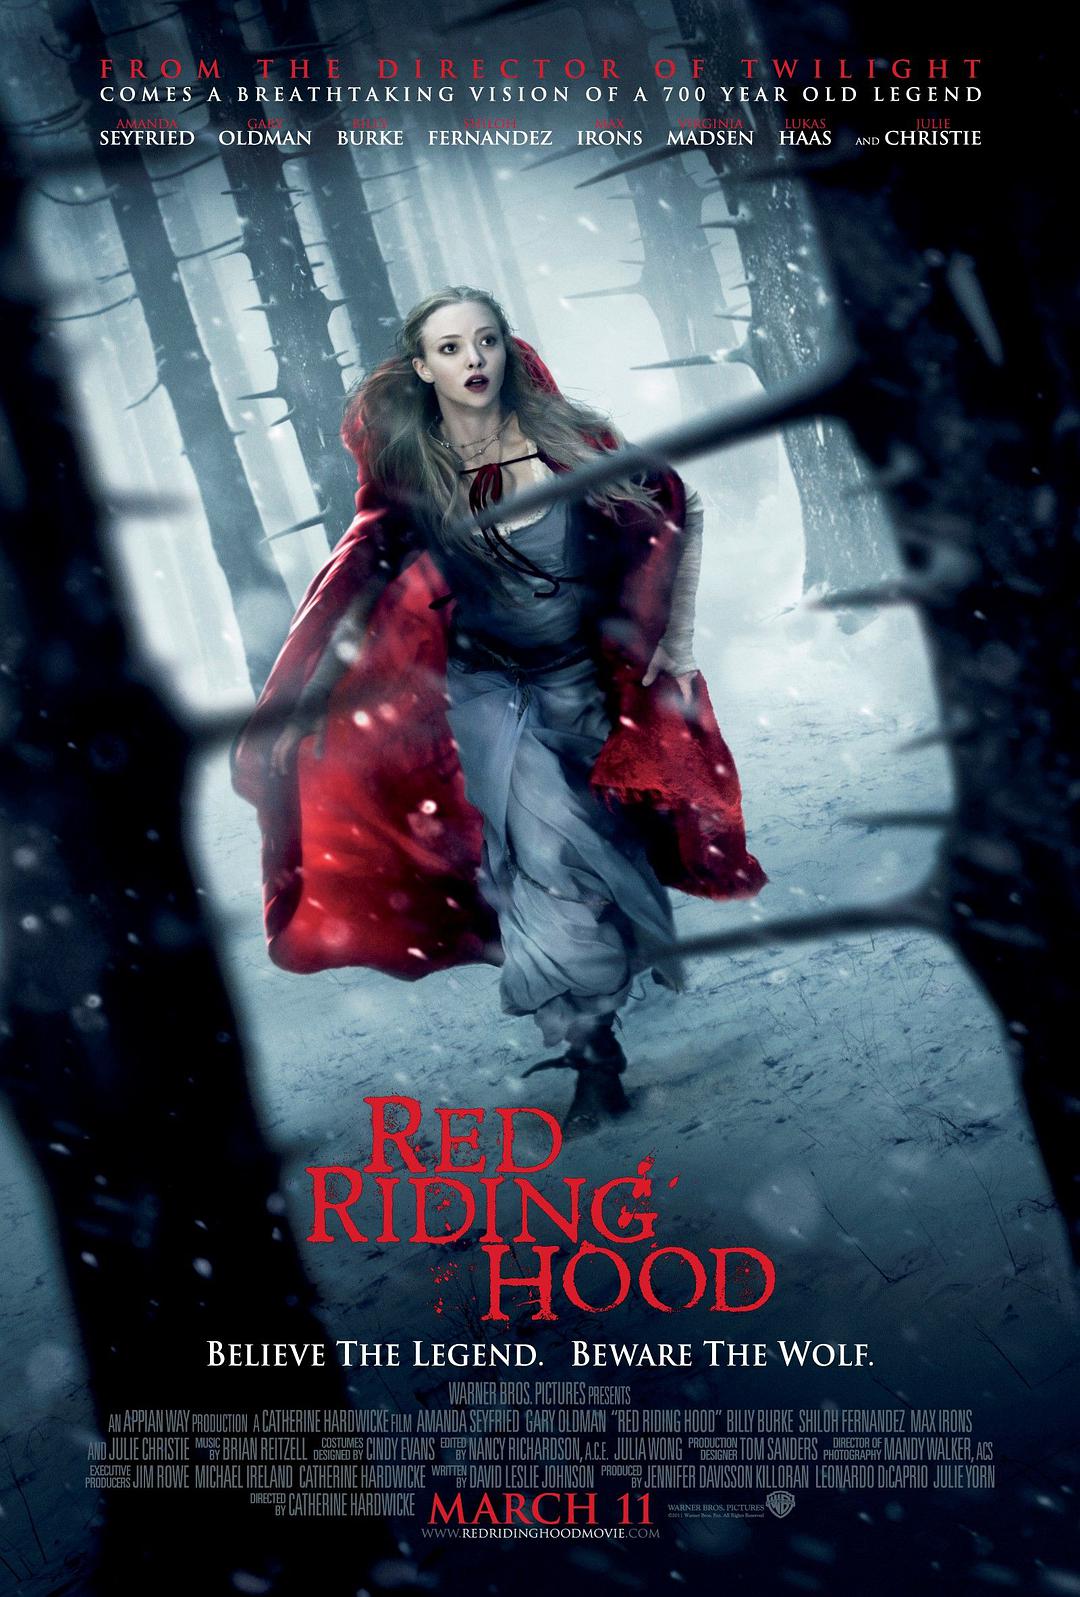 [小红帽 Red Riding Hood 2011][DIYR3繁简双语字幕 双版本结局][XOXO@HDSky][28.98GB]-1.jpg